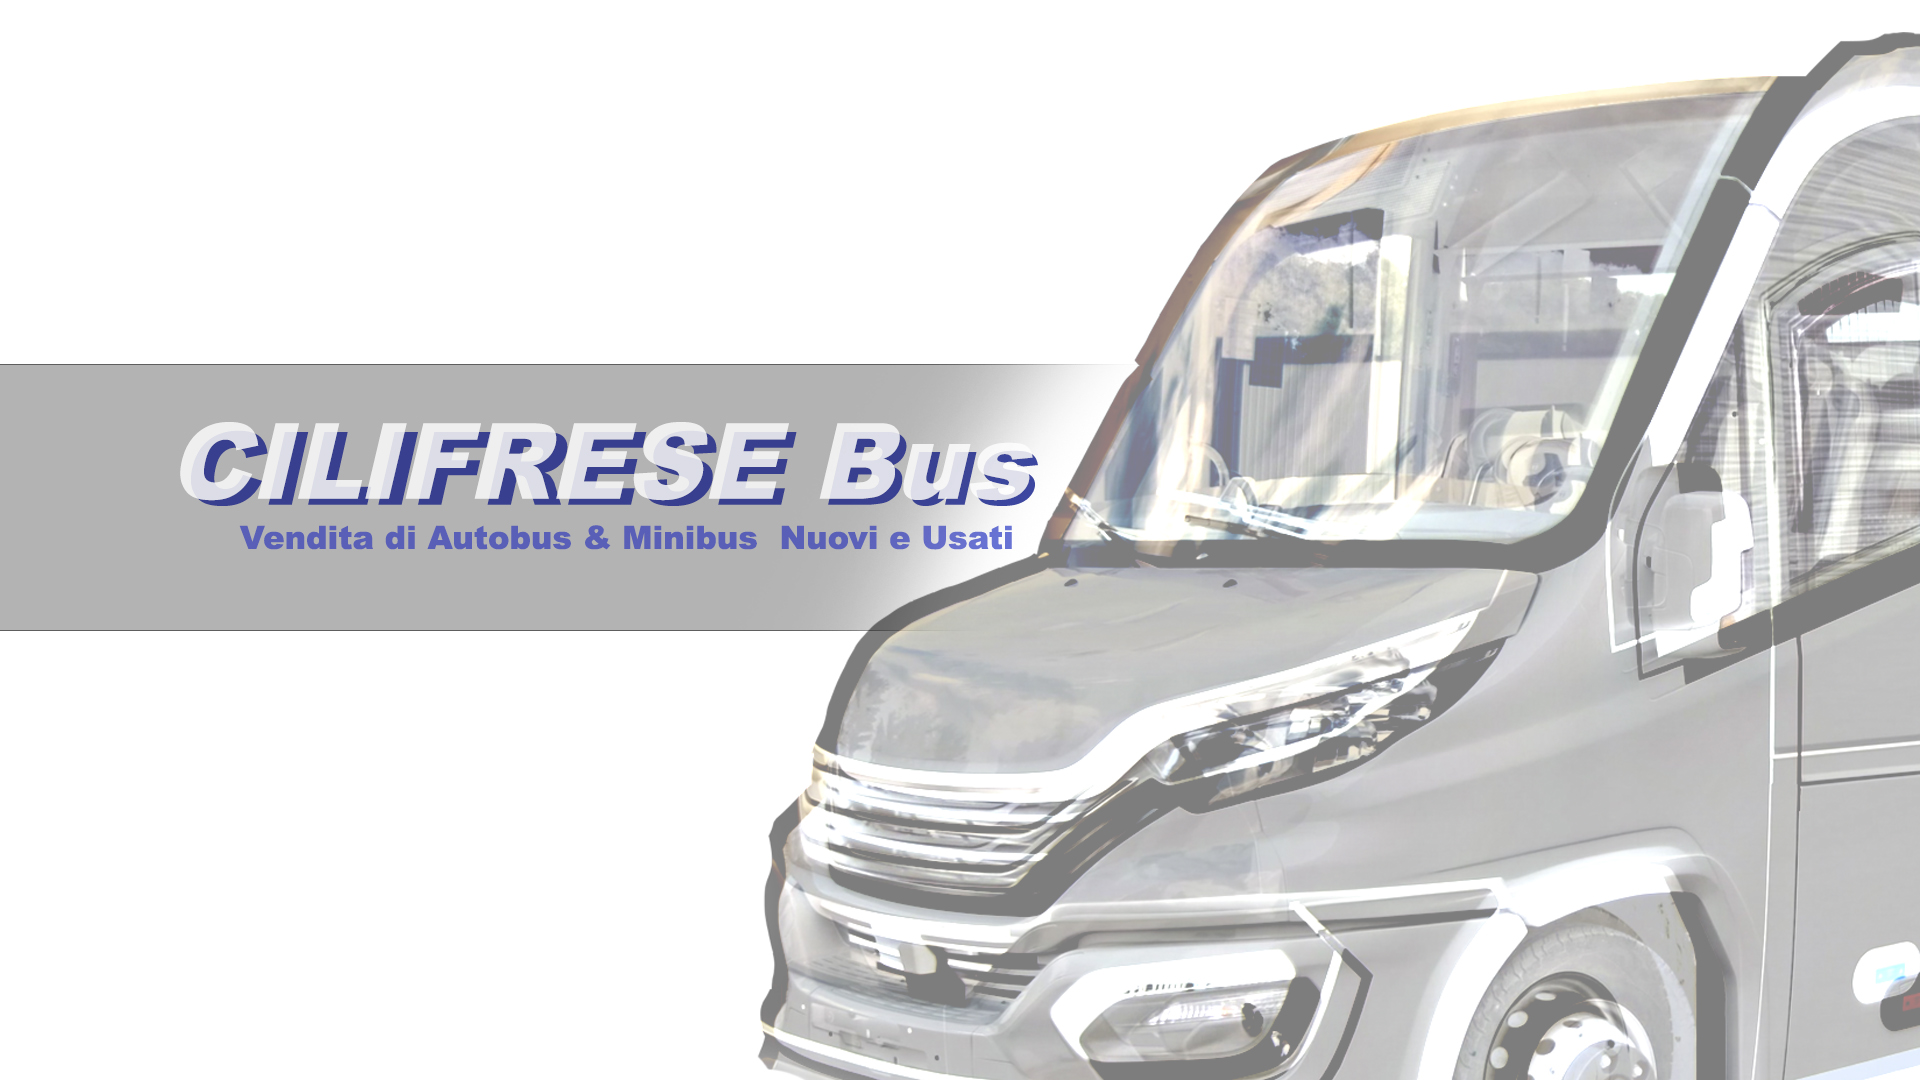 CILIFRESE BUS Vendita di Autobus & Minibus Nuovi e Usati